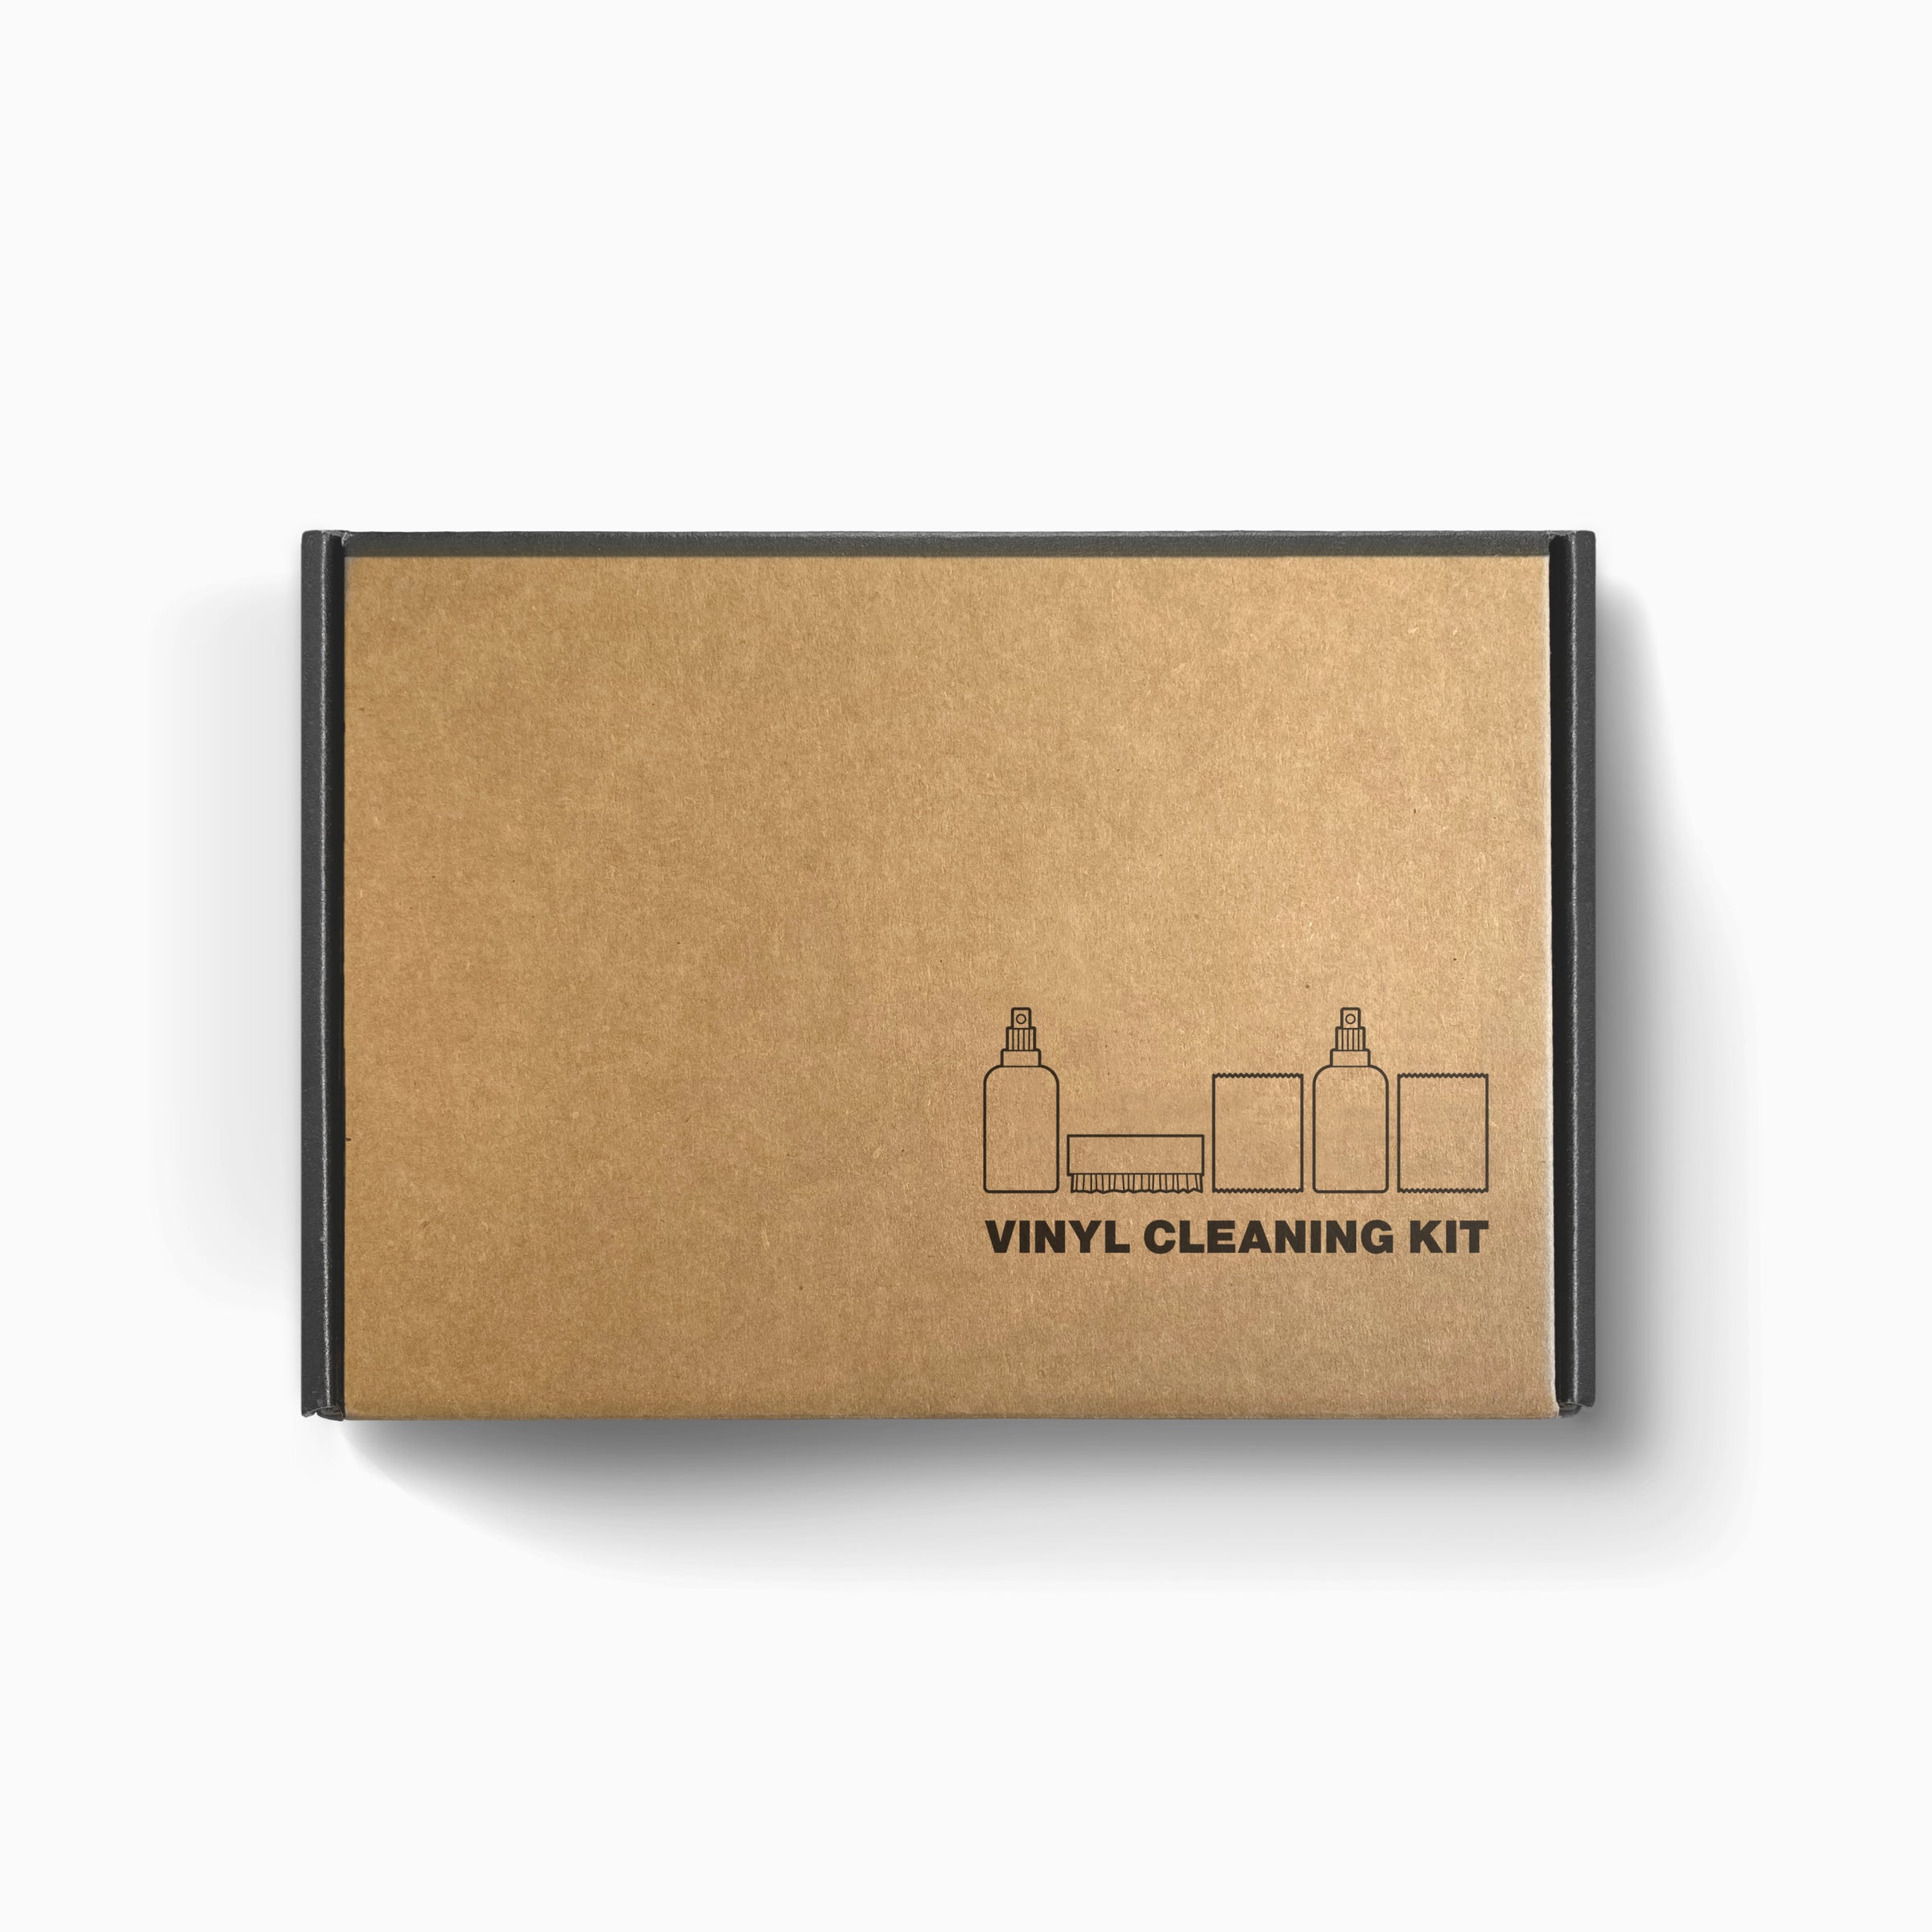 Buy Vinyl Care Kit Online